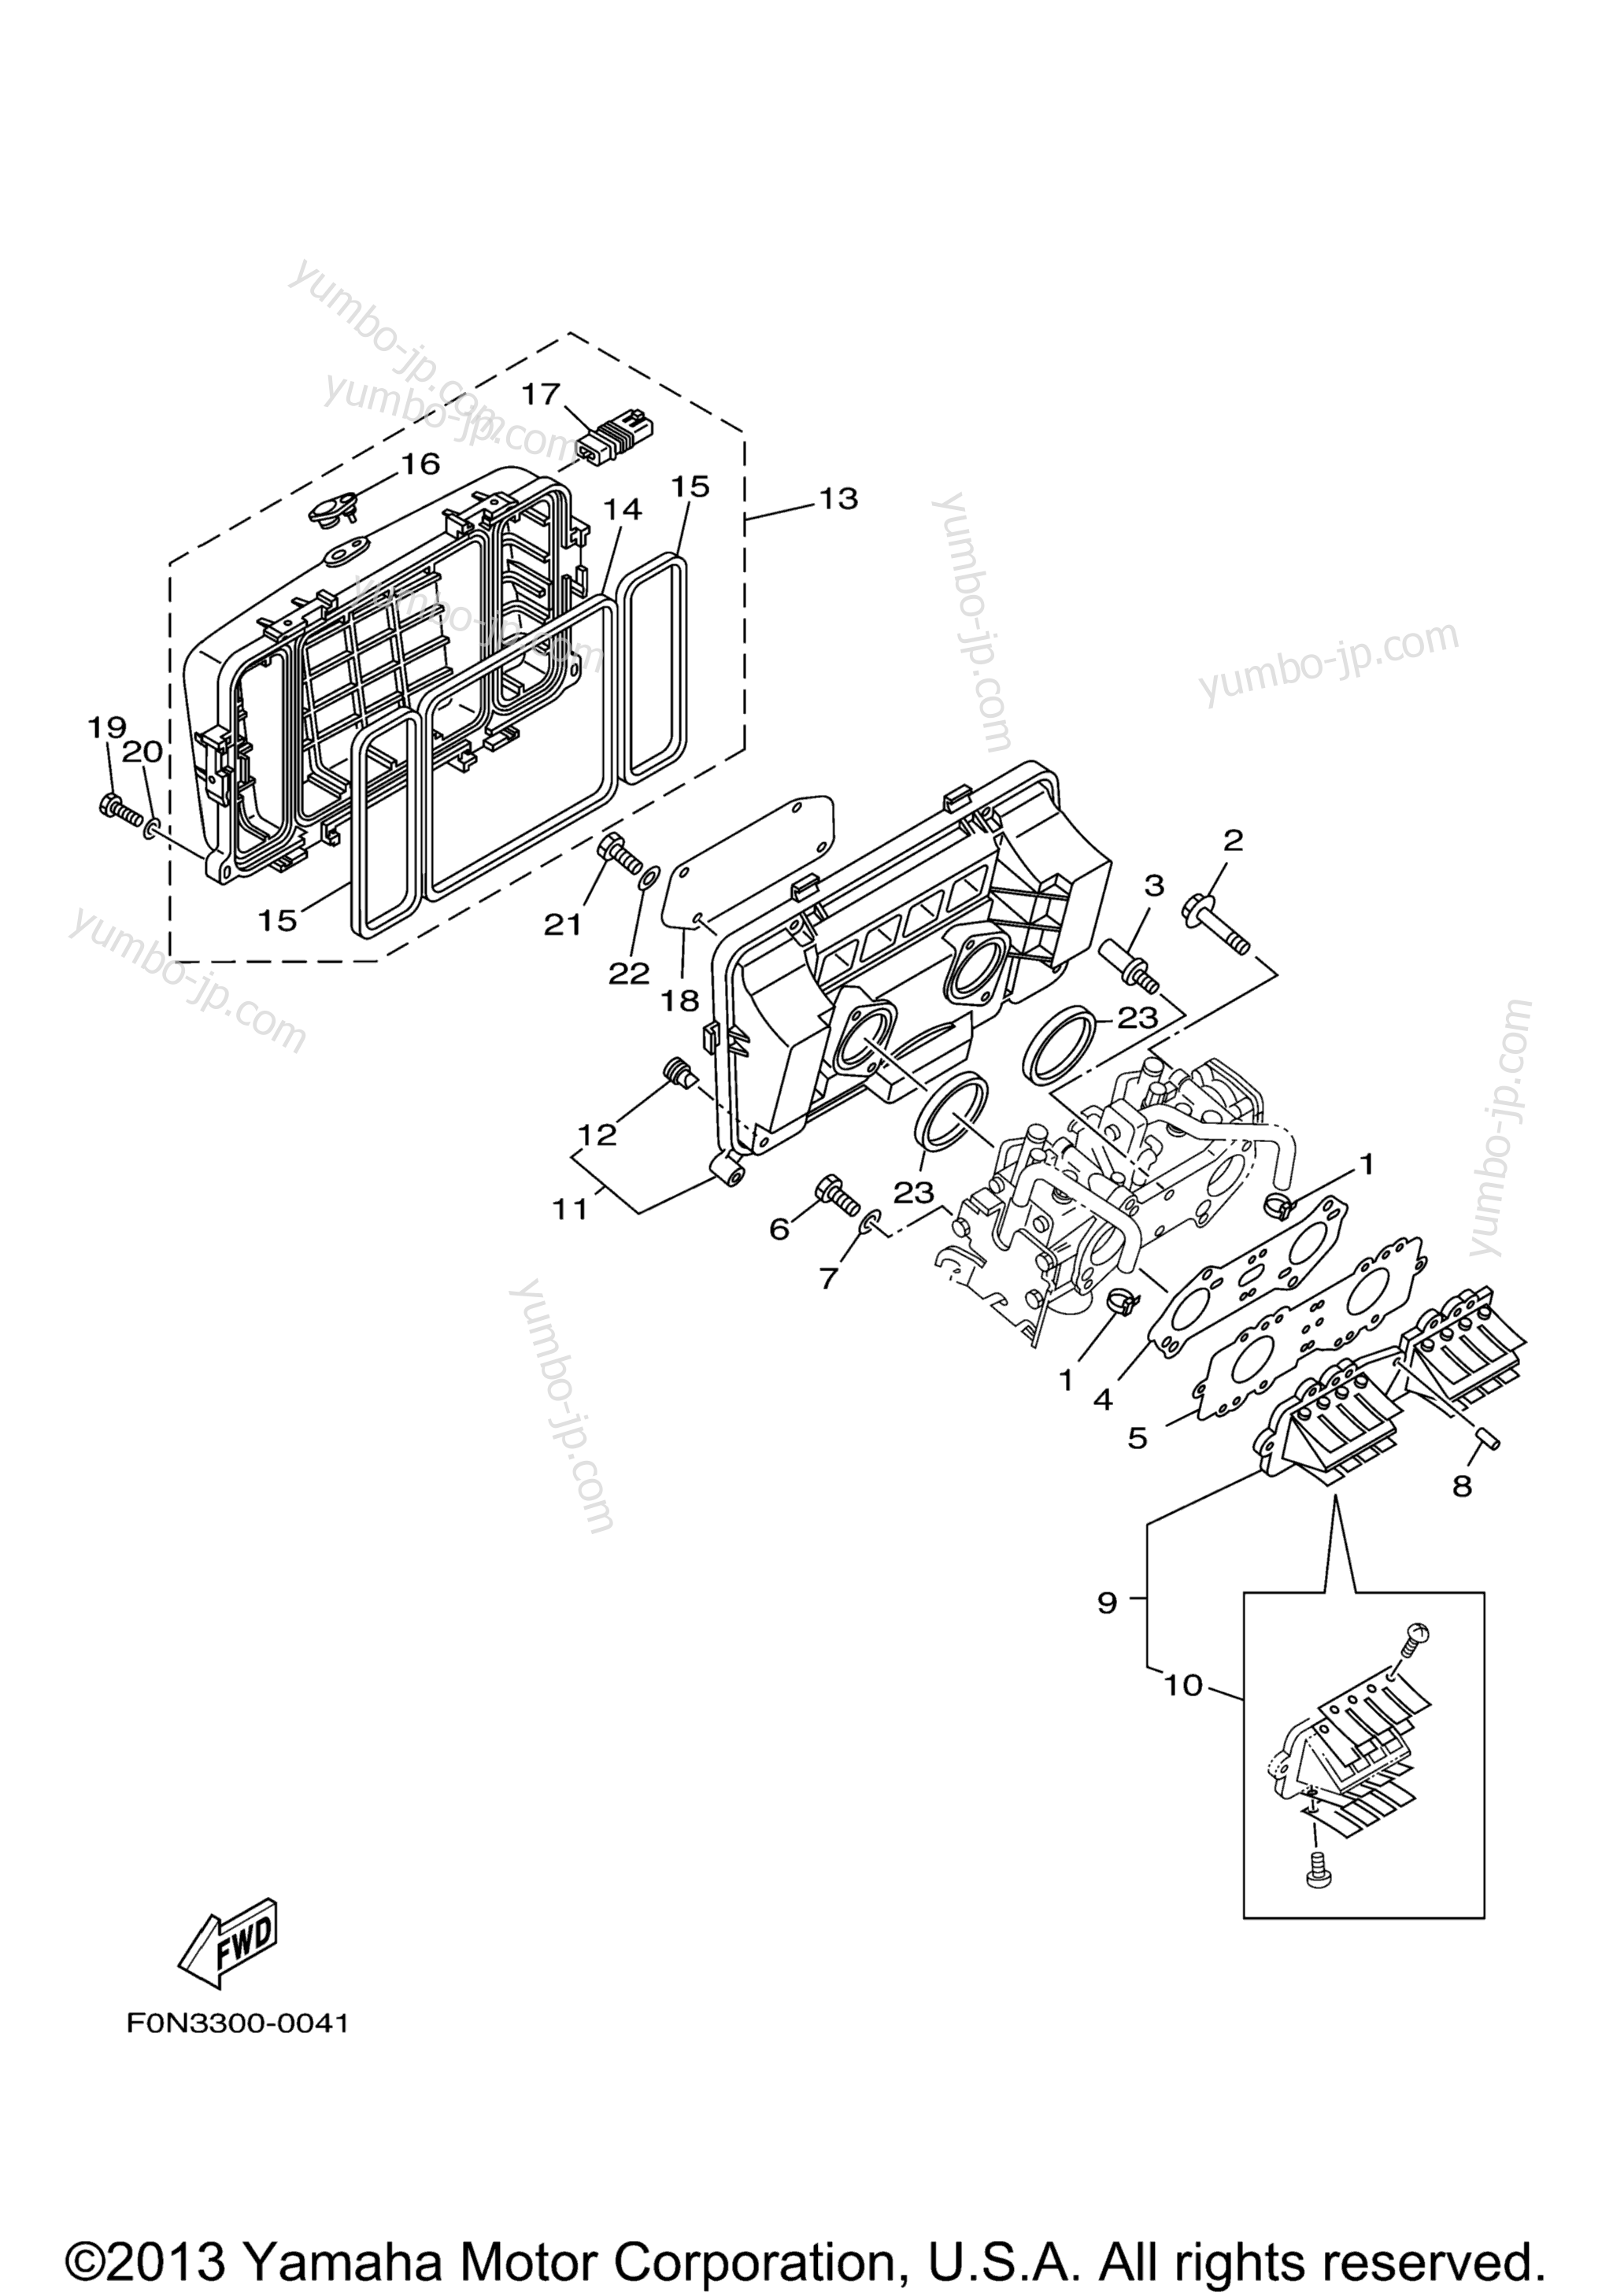 Intake для гидроциклов YAMAHA XLT800 (XA800AA) 2002 г.